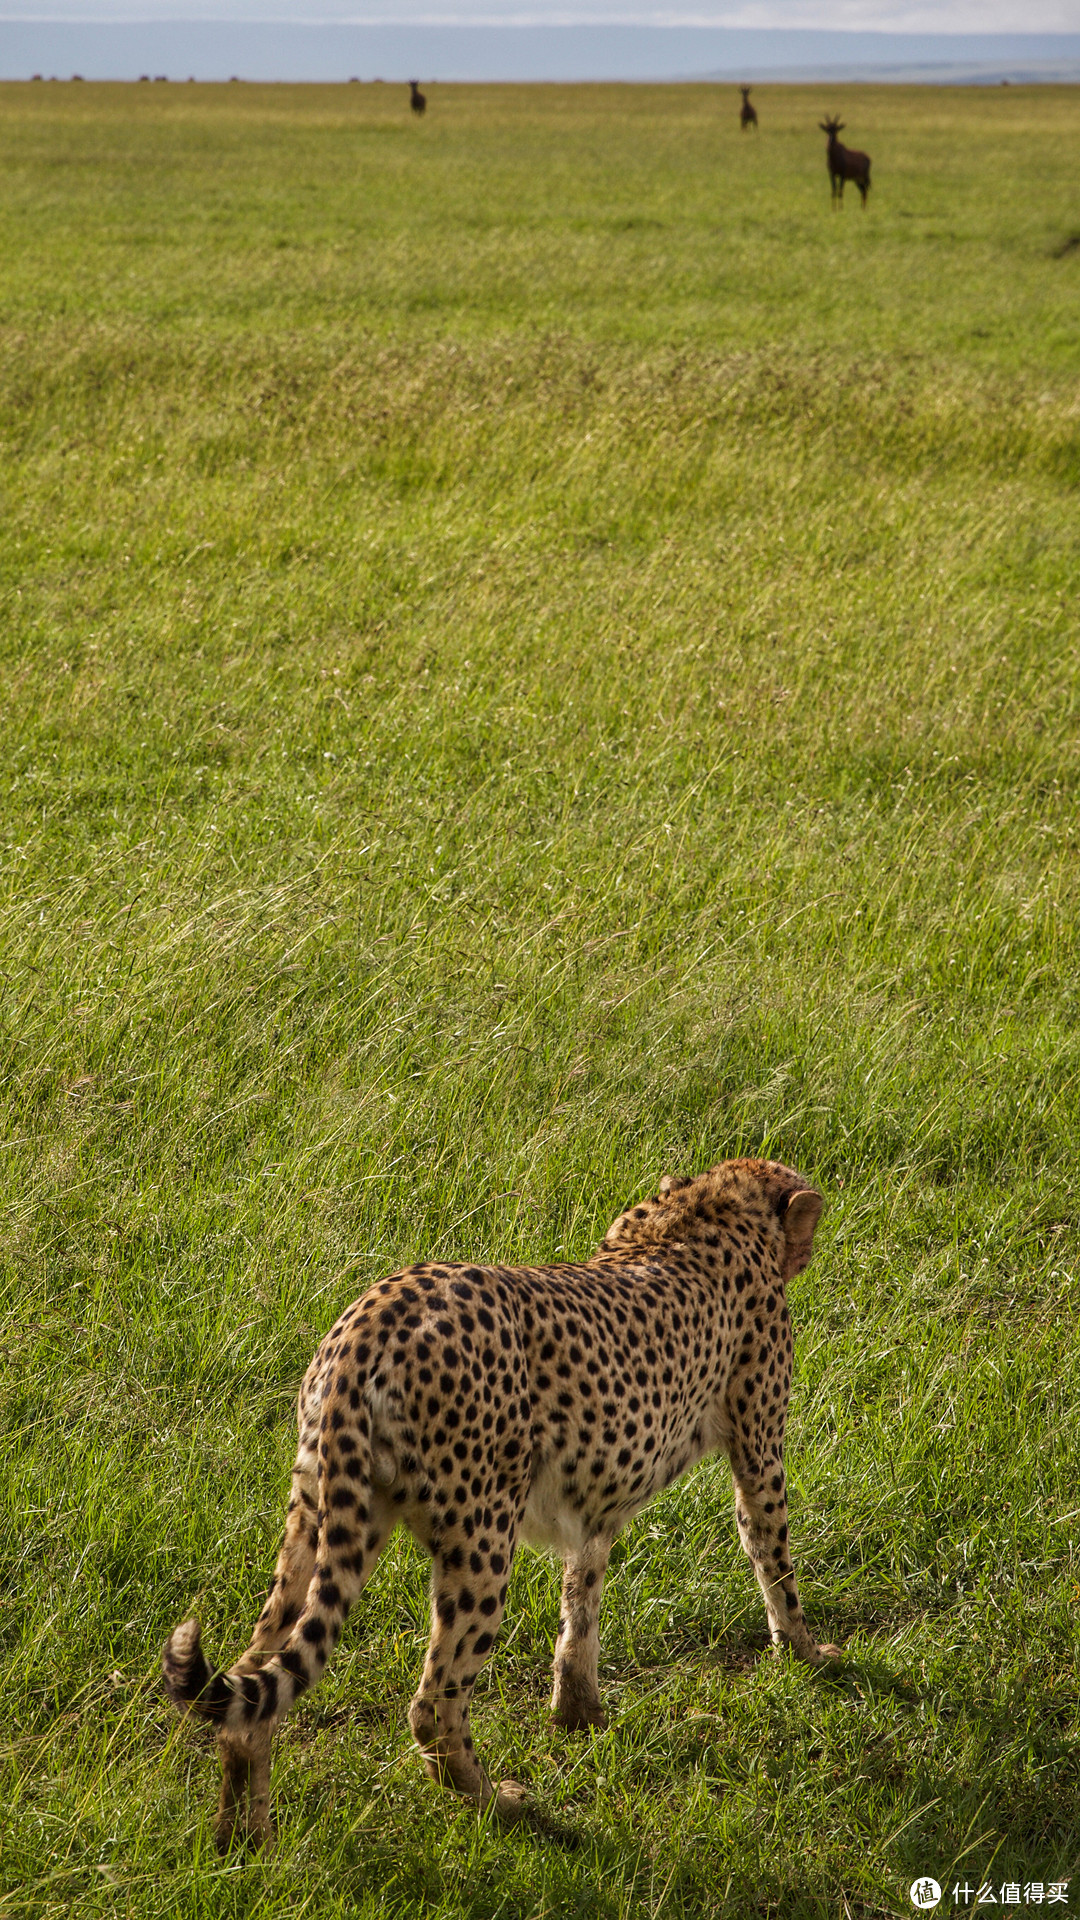 非洲肯尼亚自由行——颜面尽失的猎豹和狮子（六）